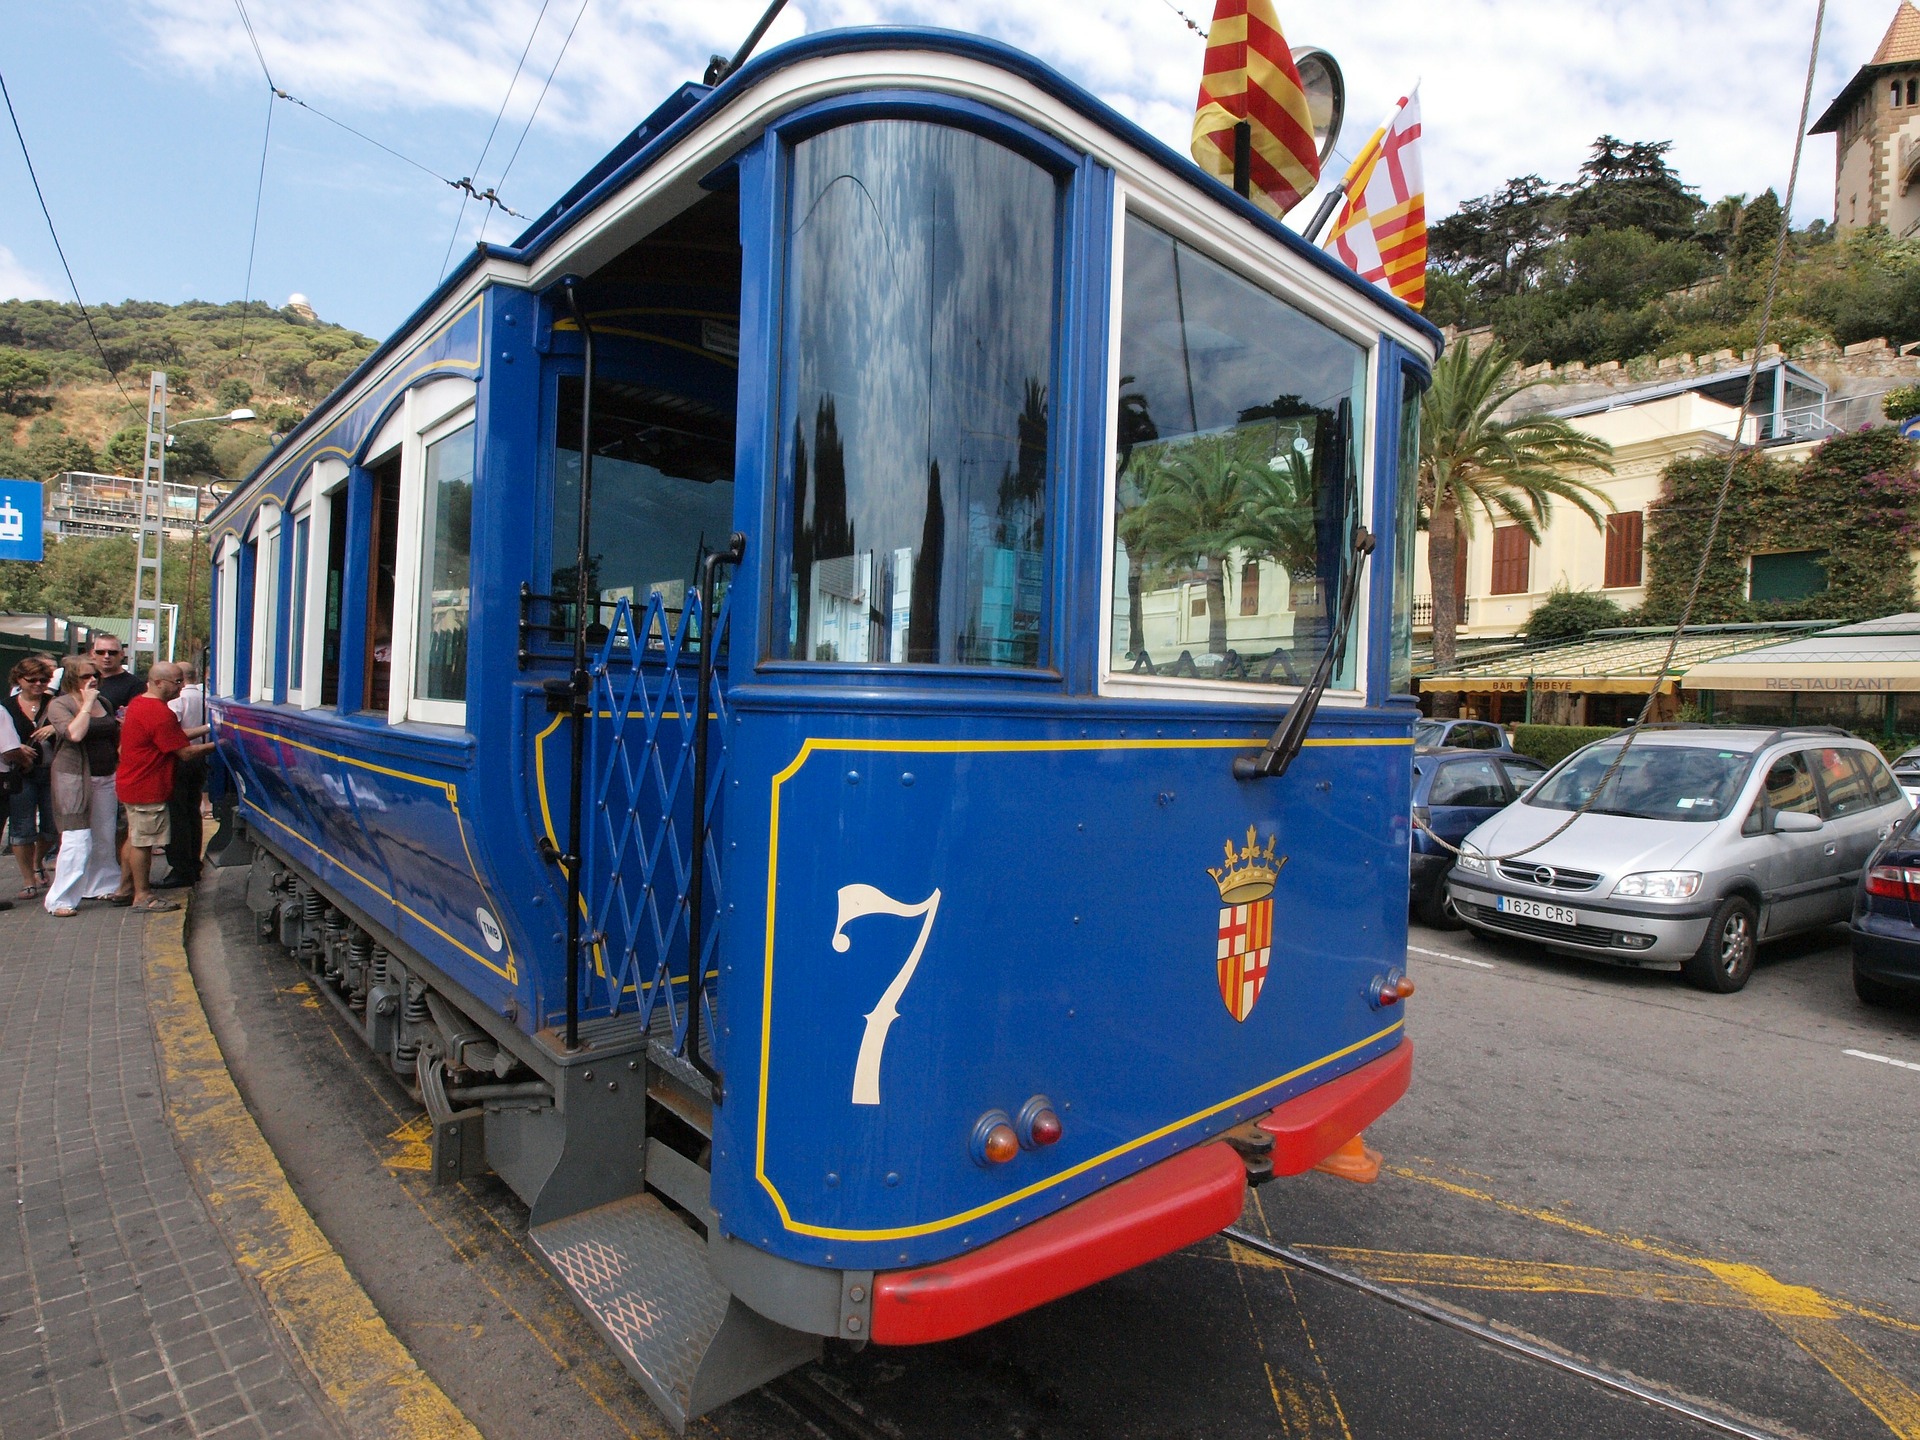 Tram in Barcelona, Spain